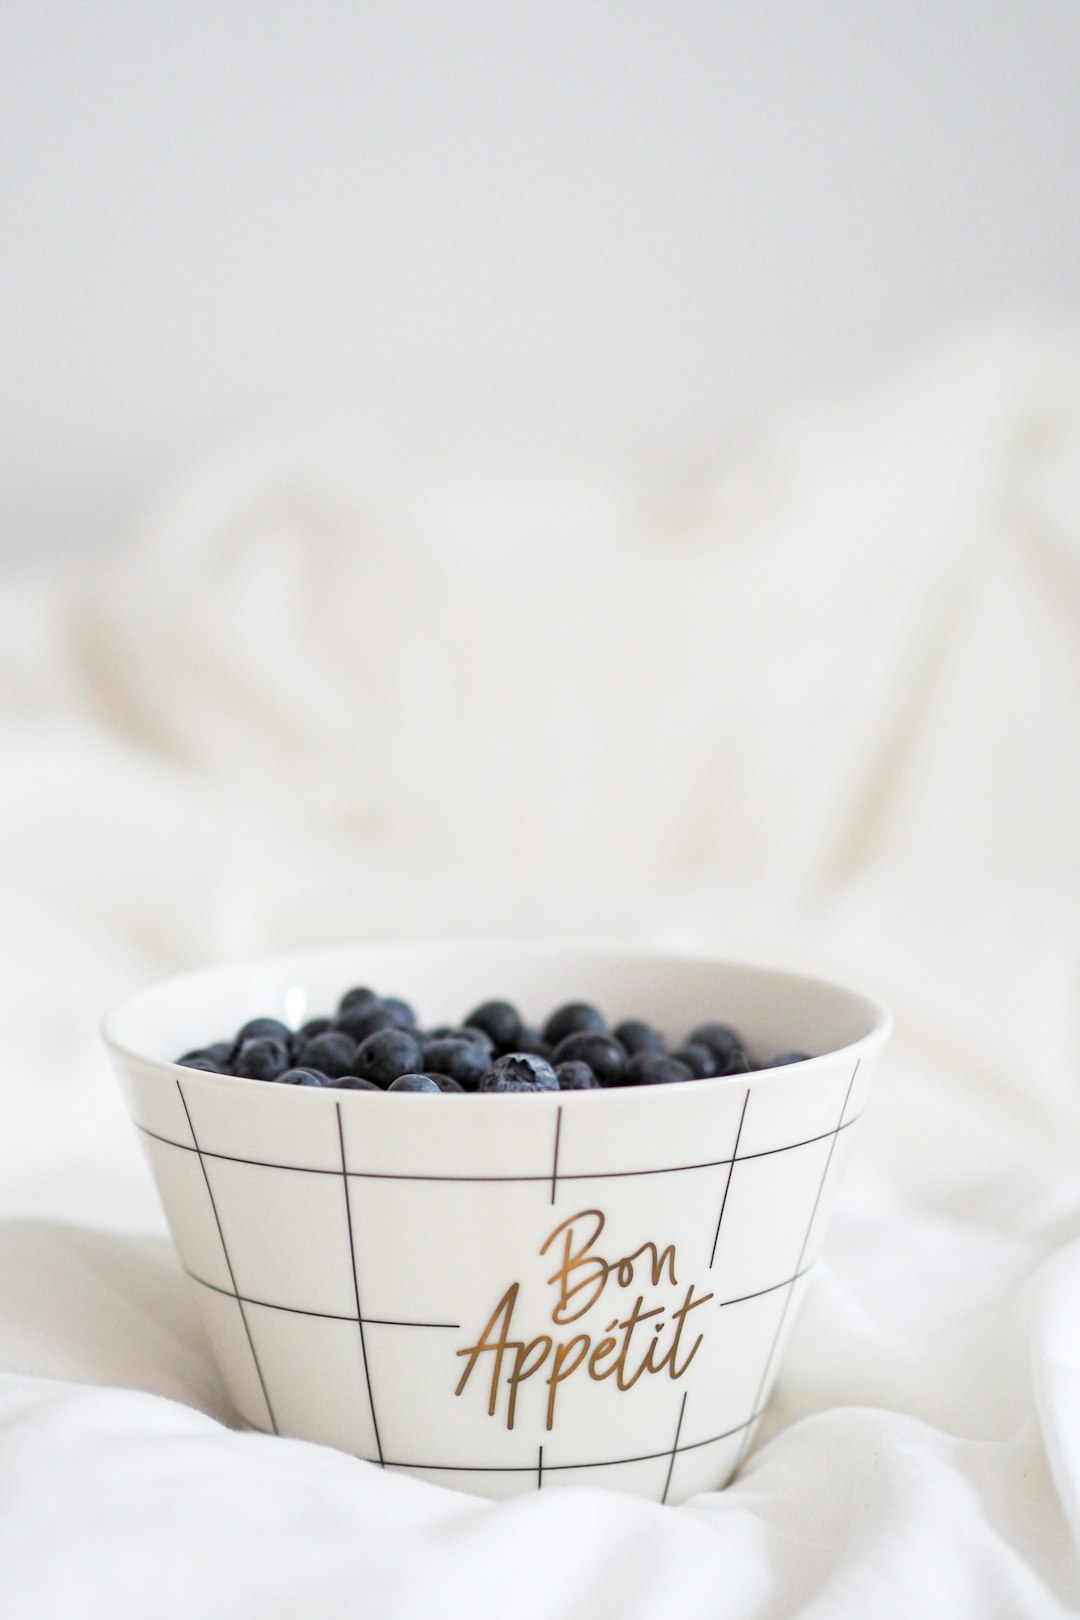 black berries in white ceramic bowl